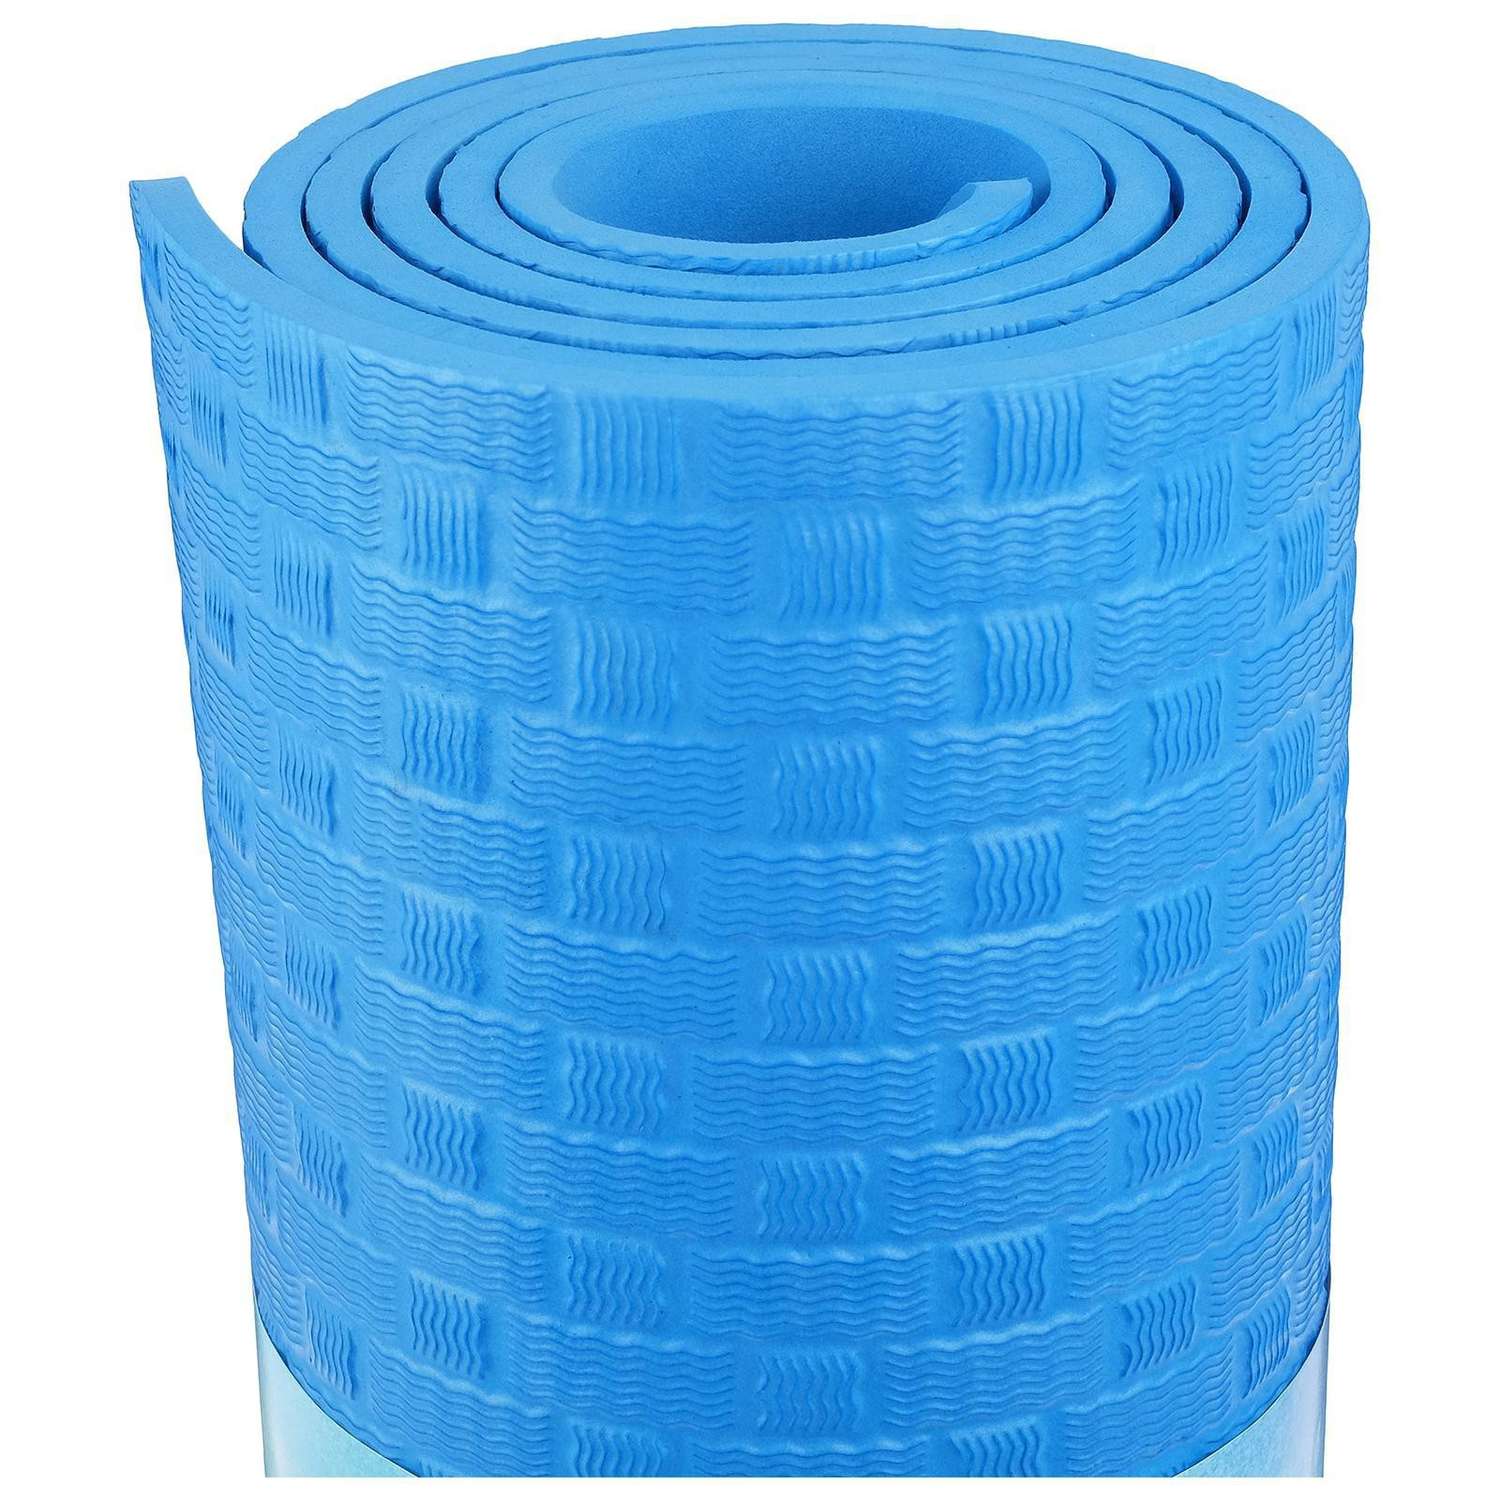 Коврик Sangh 183 х 61 х 0.7 см. цвет синий - фото 8